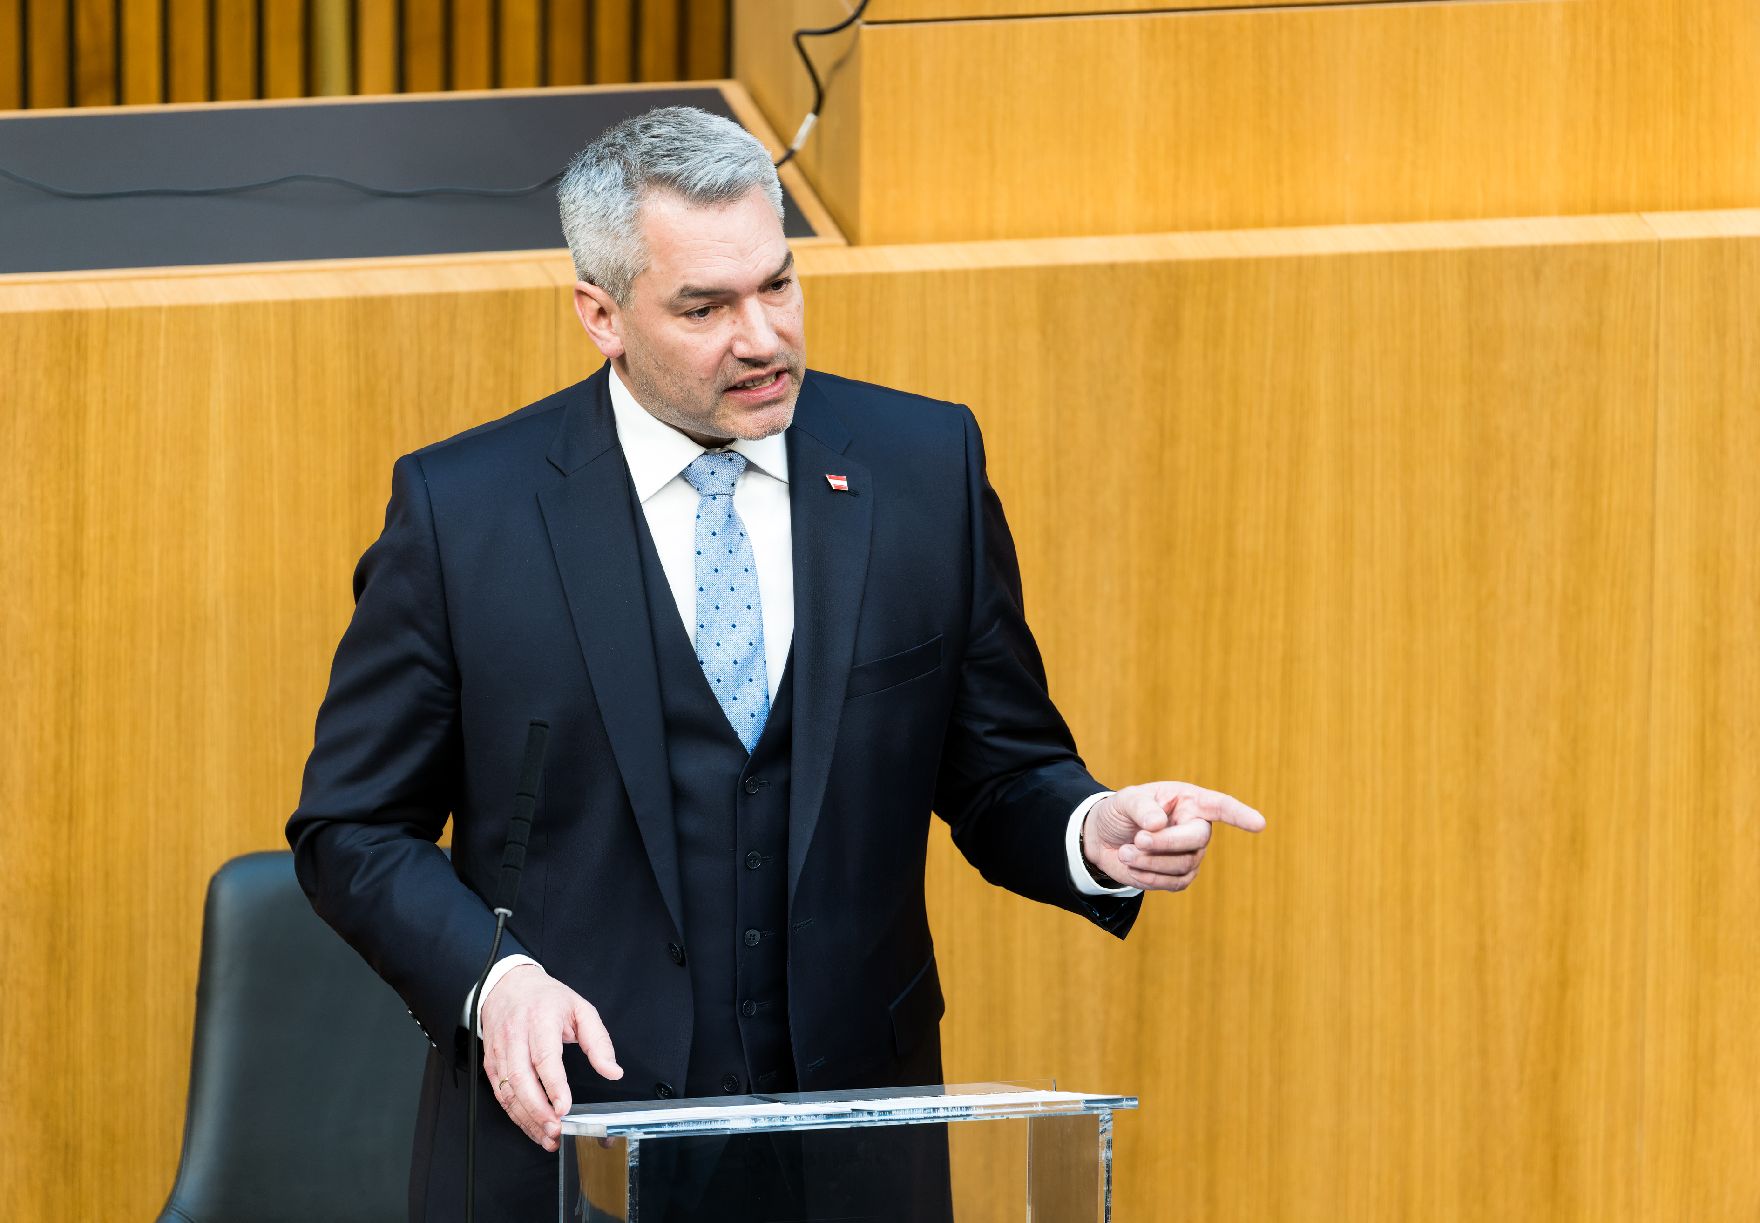 Am 25. Jänner 2023 fand eine Sondersitzung des Nationalrats zum Thema Teuerung statt. Im Bild Bundeskanzler Karl Nehammer.